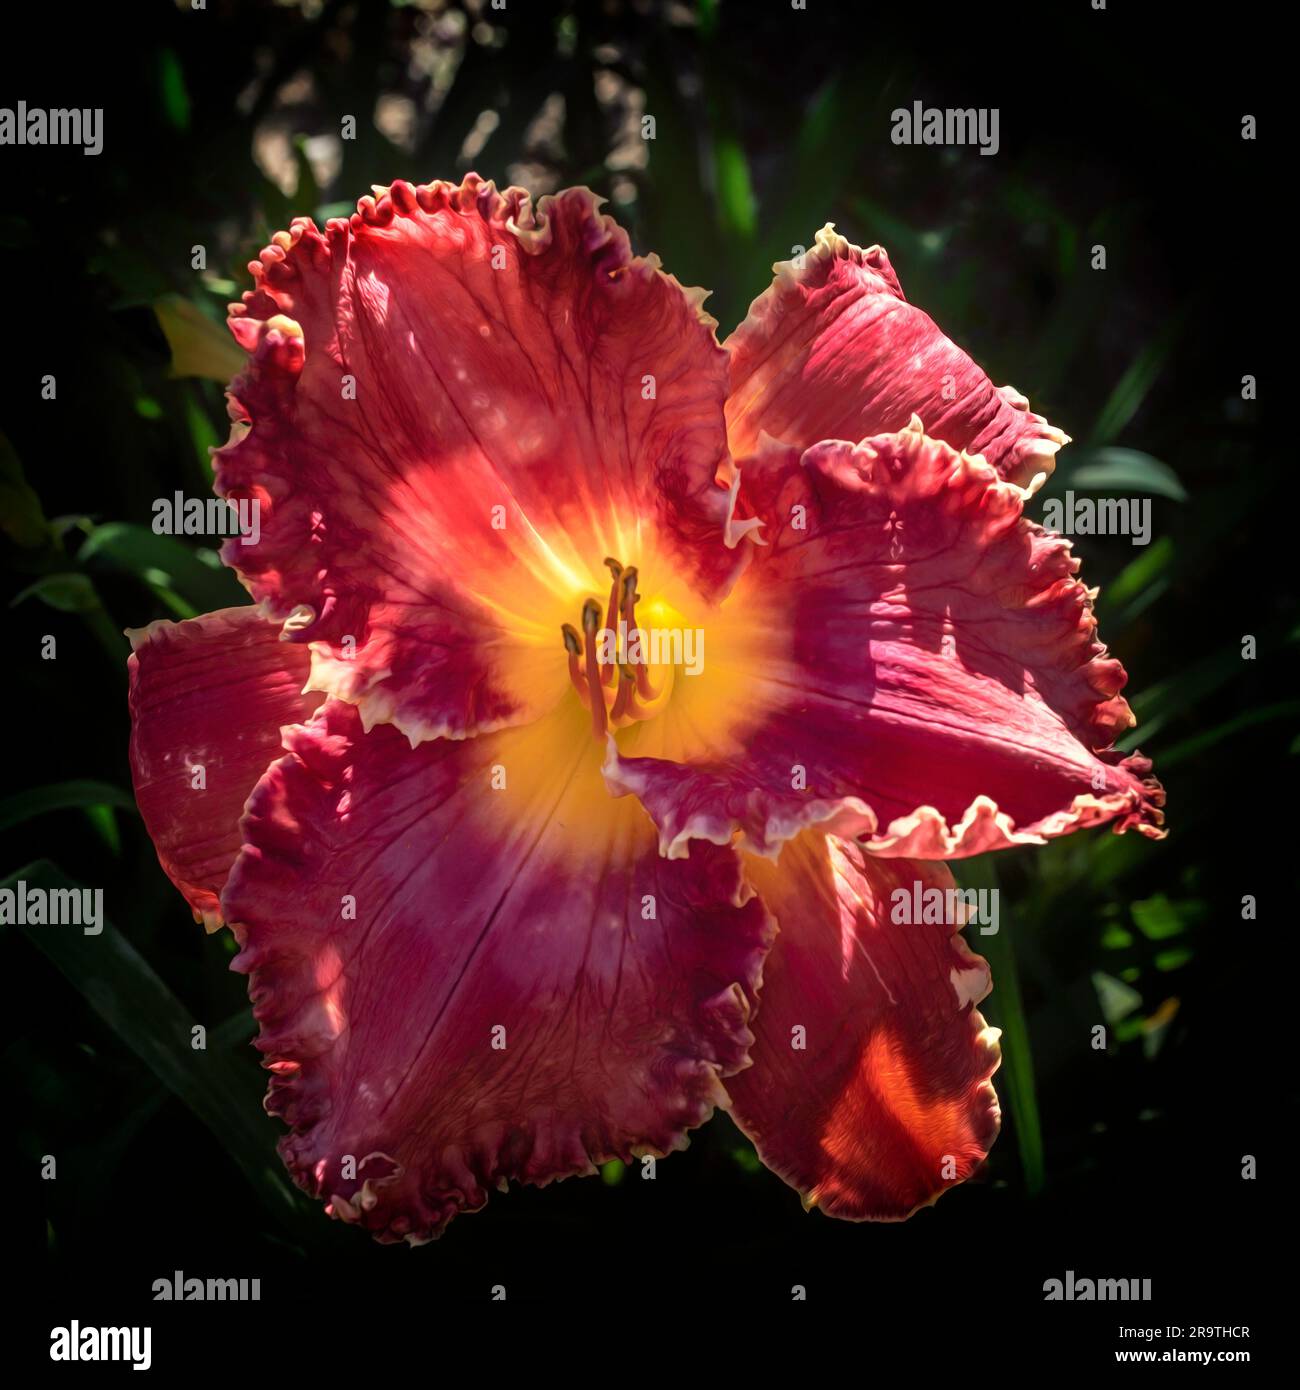 Daylily, plante florale du genre Hemerocallis, jardin Botanico de la Concepcion, Malaga, Andalousie, Espagne Banque D'Images